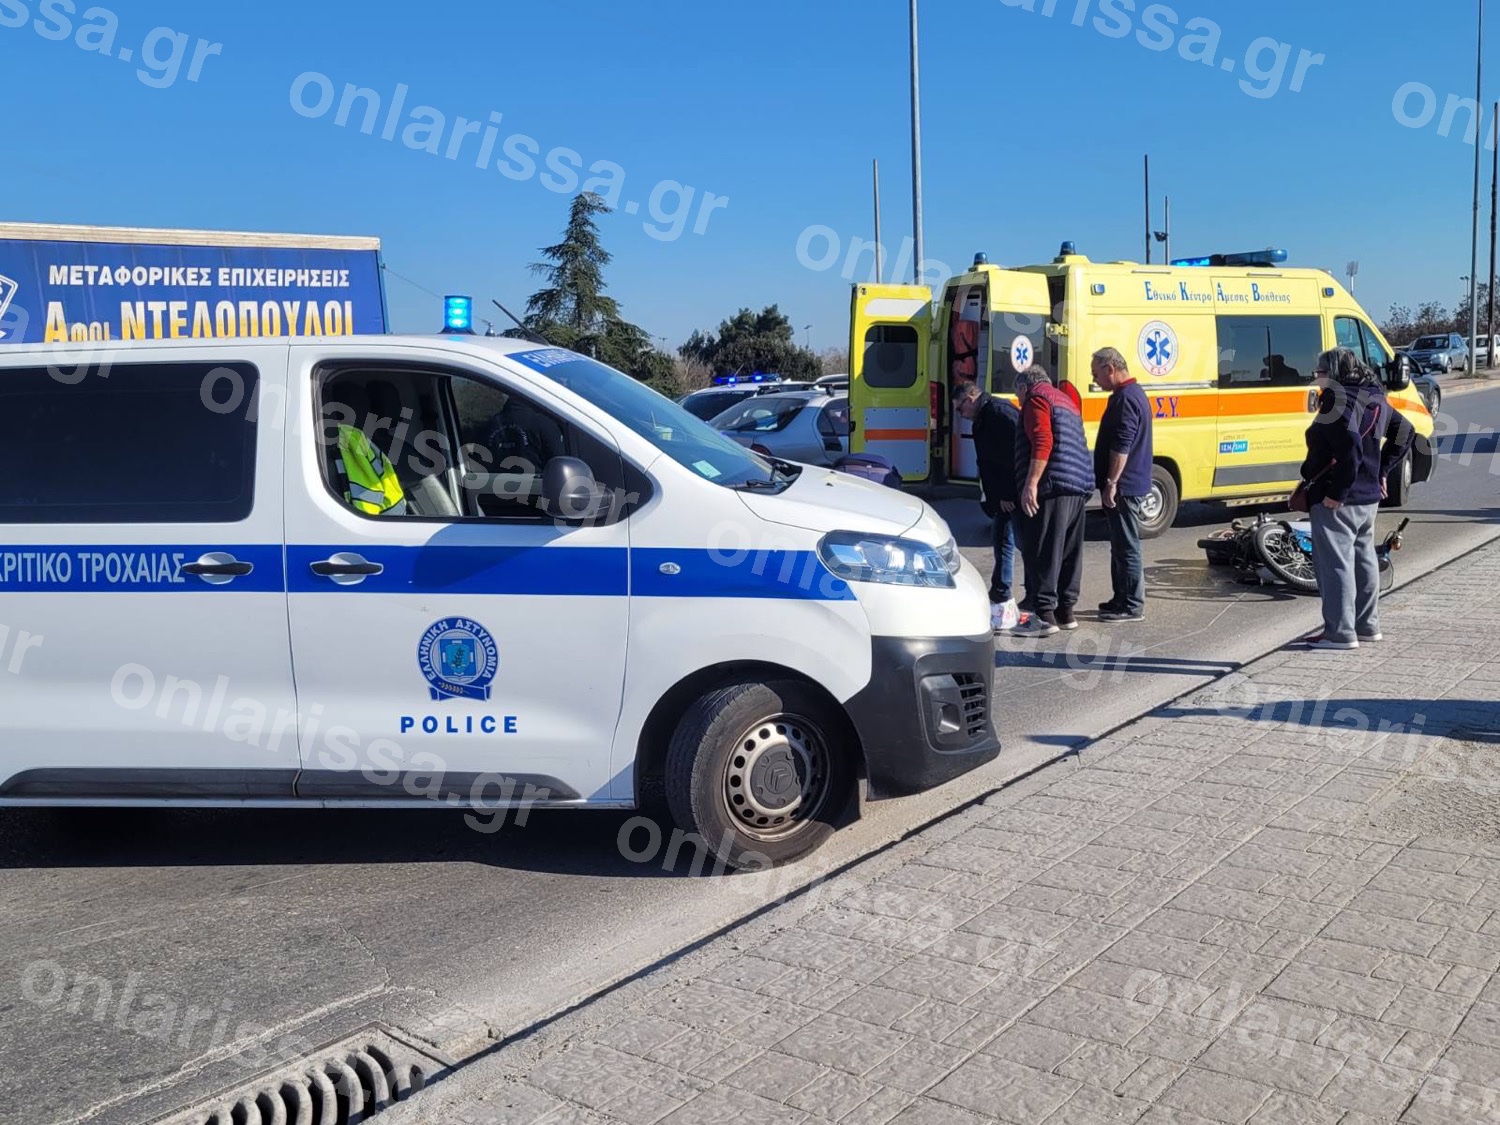 Αυτοκίνητο χτυπήθηκε από μοτοσικλέτα – άνδρας στο νοσοκομείο (εικόνες)